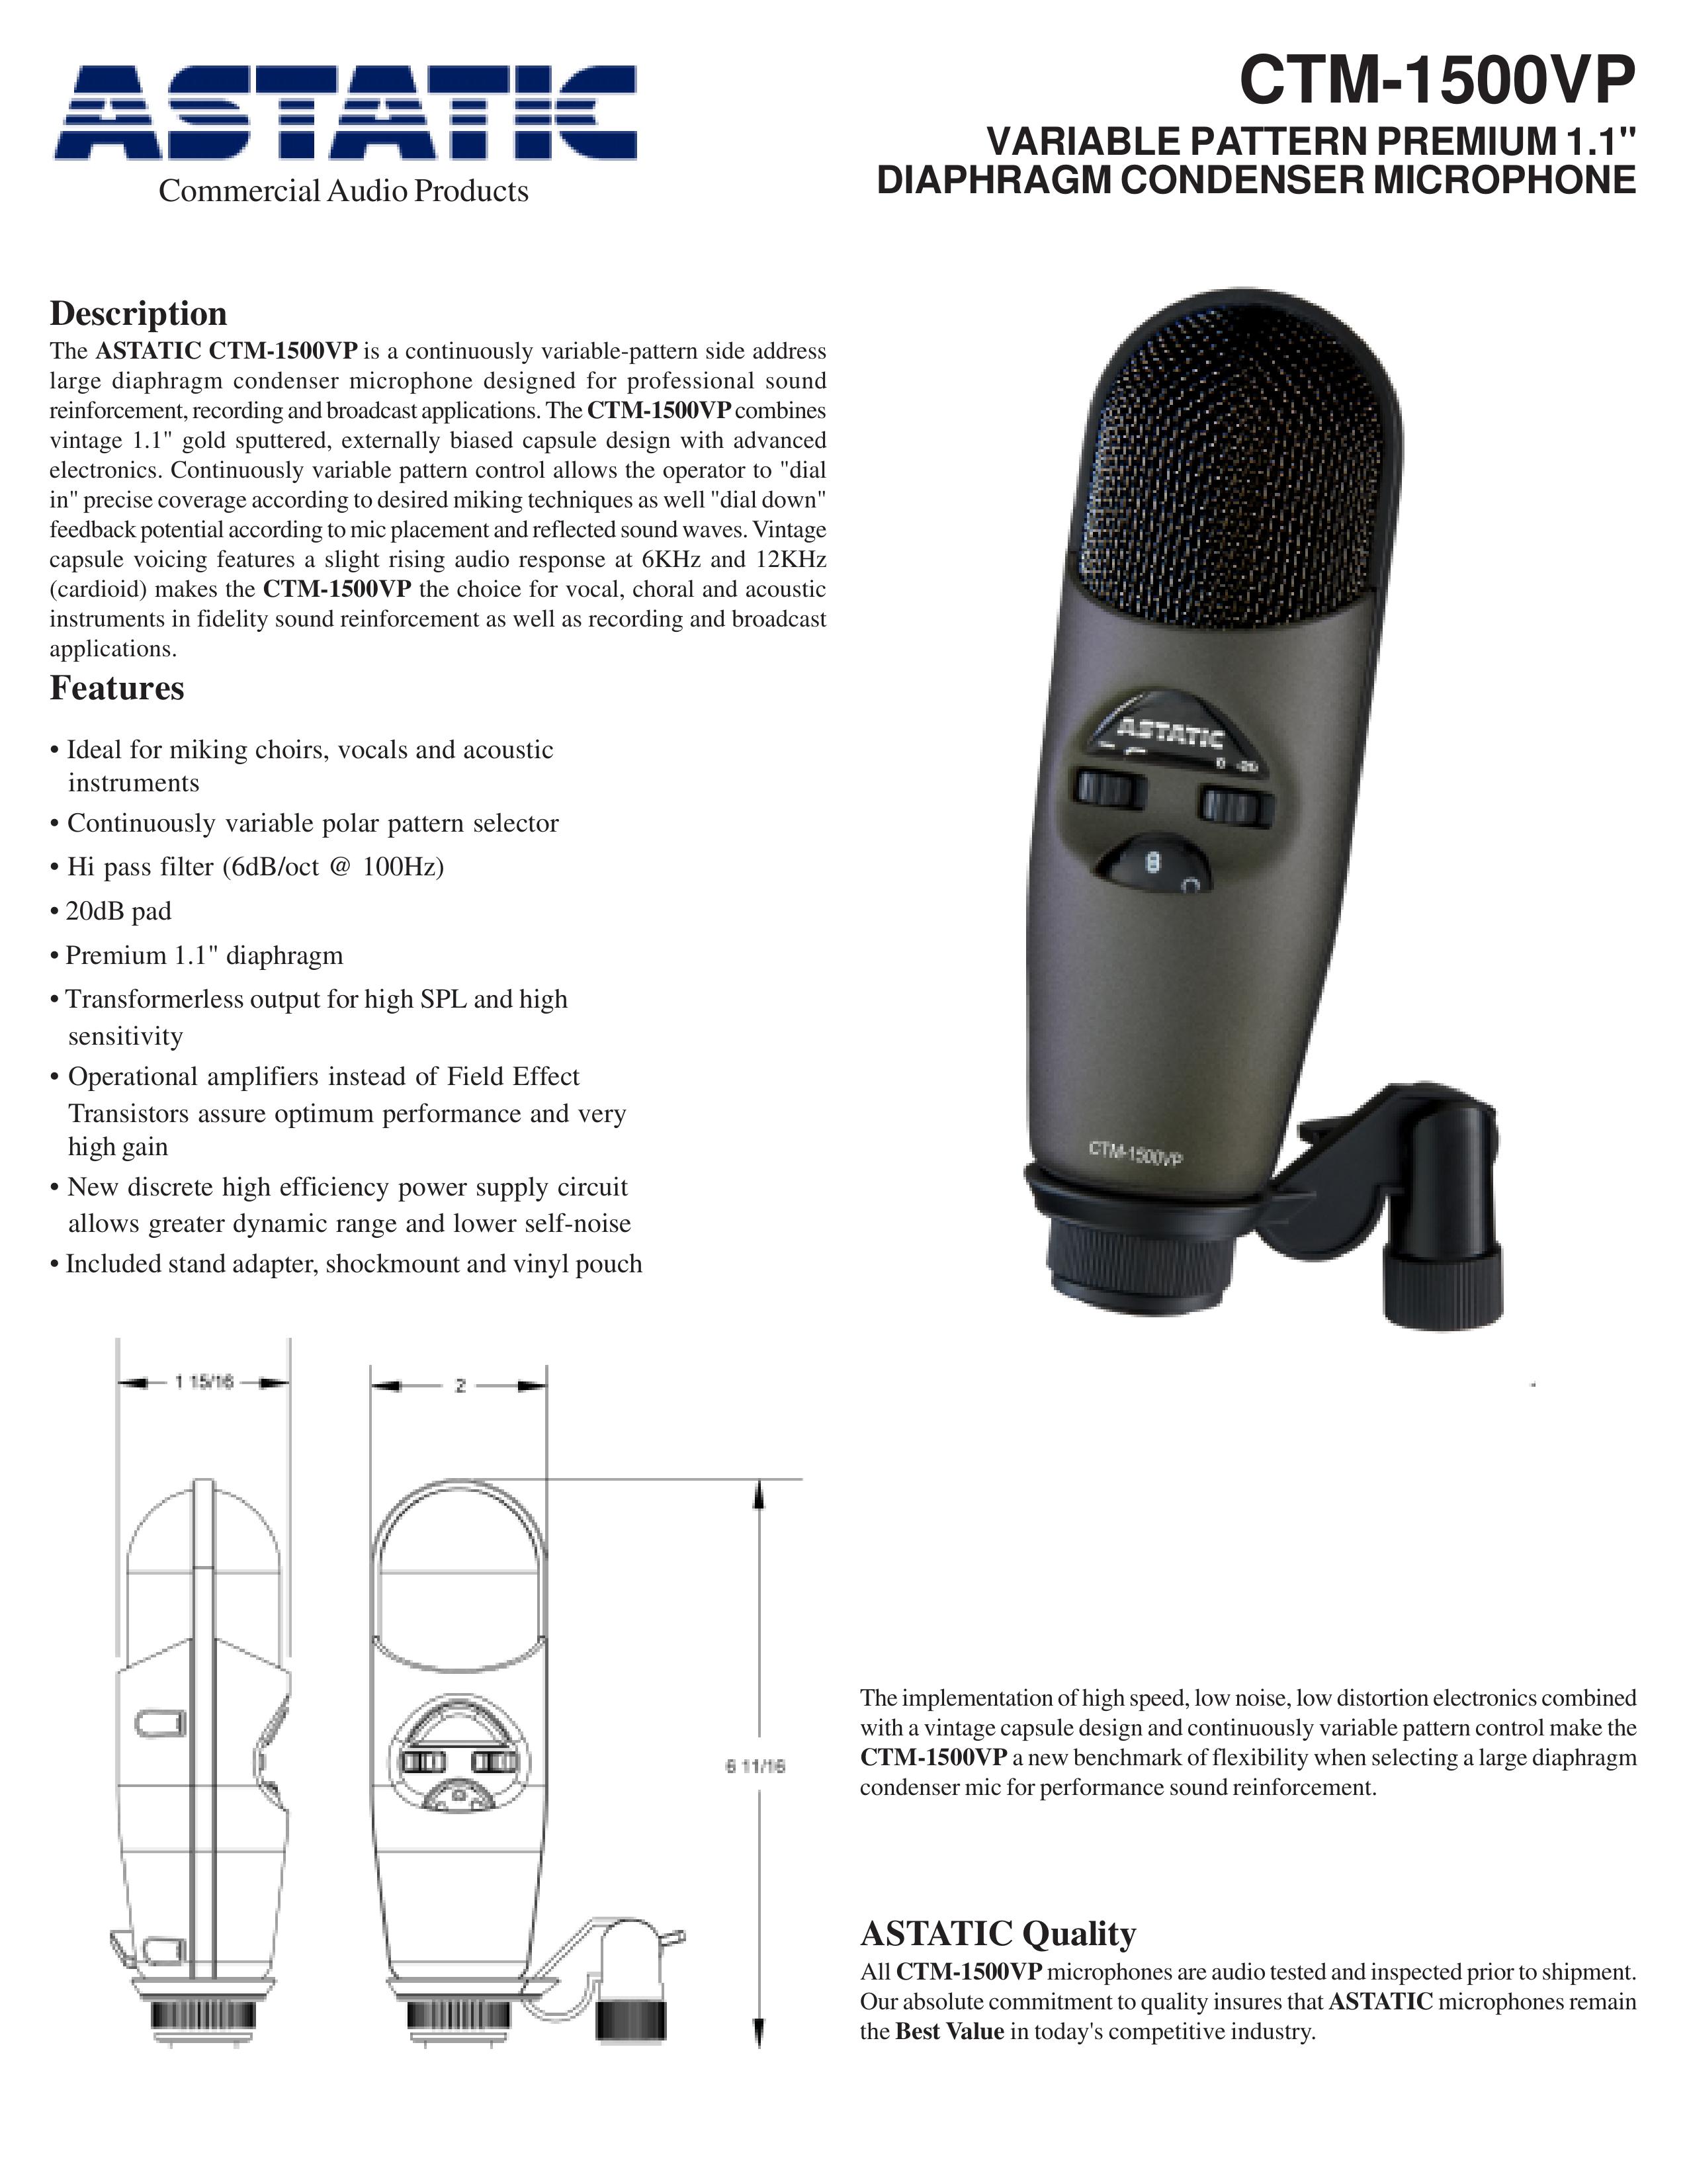 Astatic CTM-1500VP Microphone User Manual